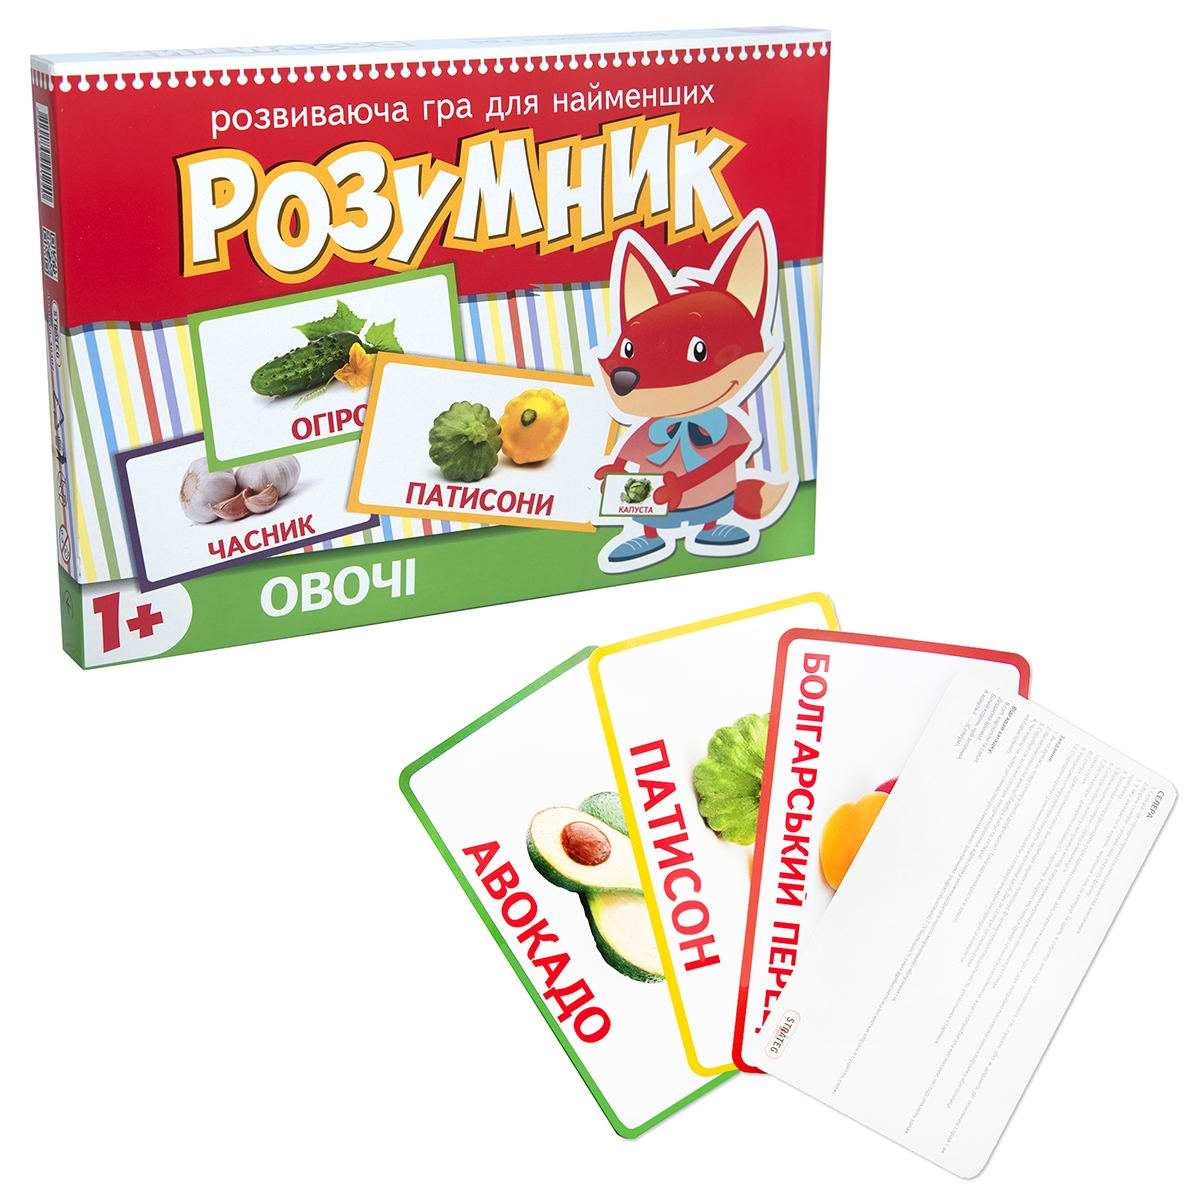 Игра Strateg Маленький умник серия овощи на украинском языке (30302)